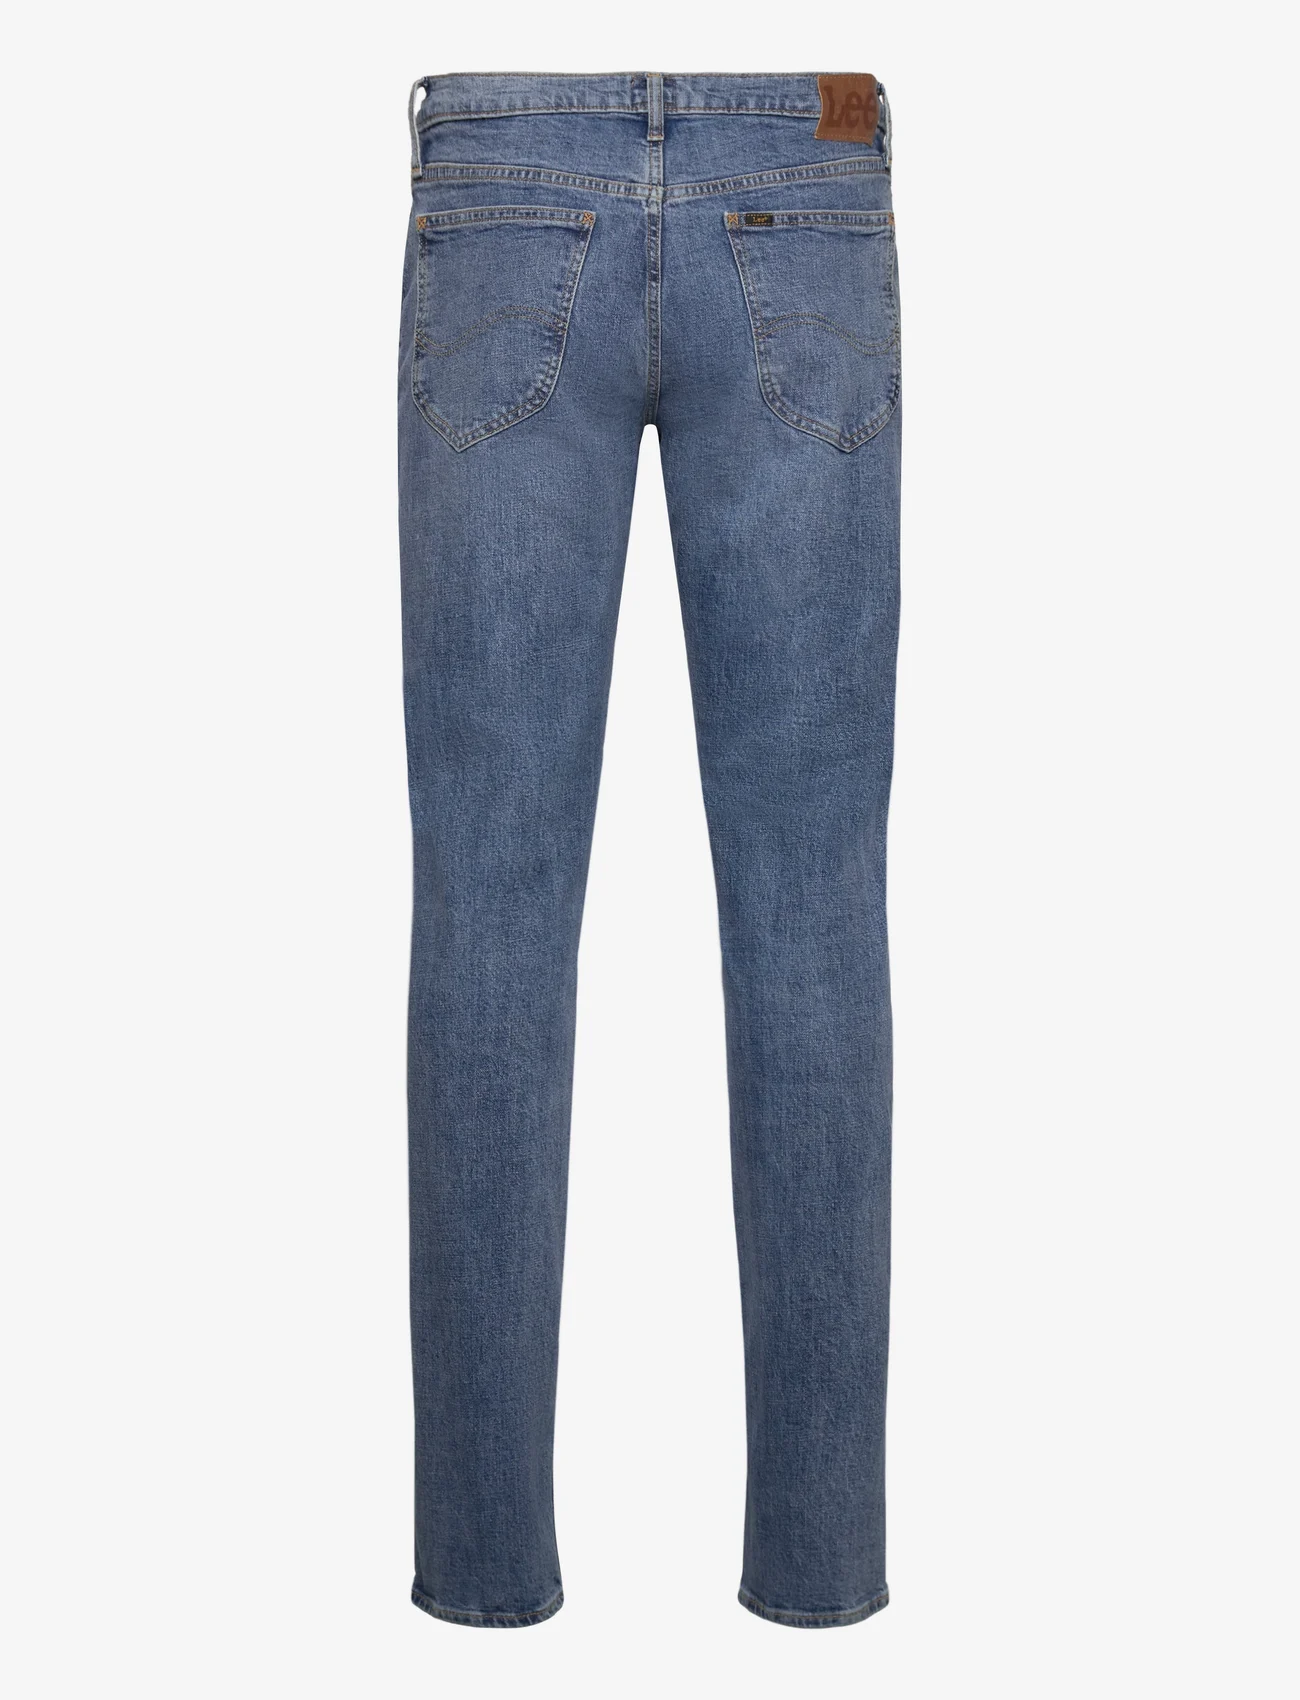 Lee Jeans - DAREN ZIP FLY - regular jeans - country road - 1